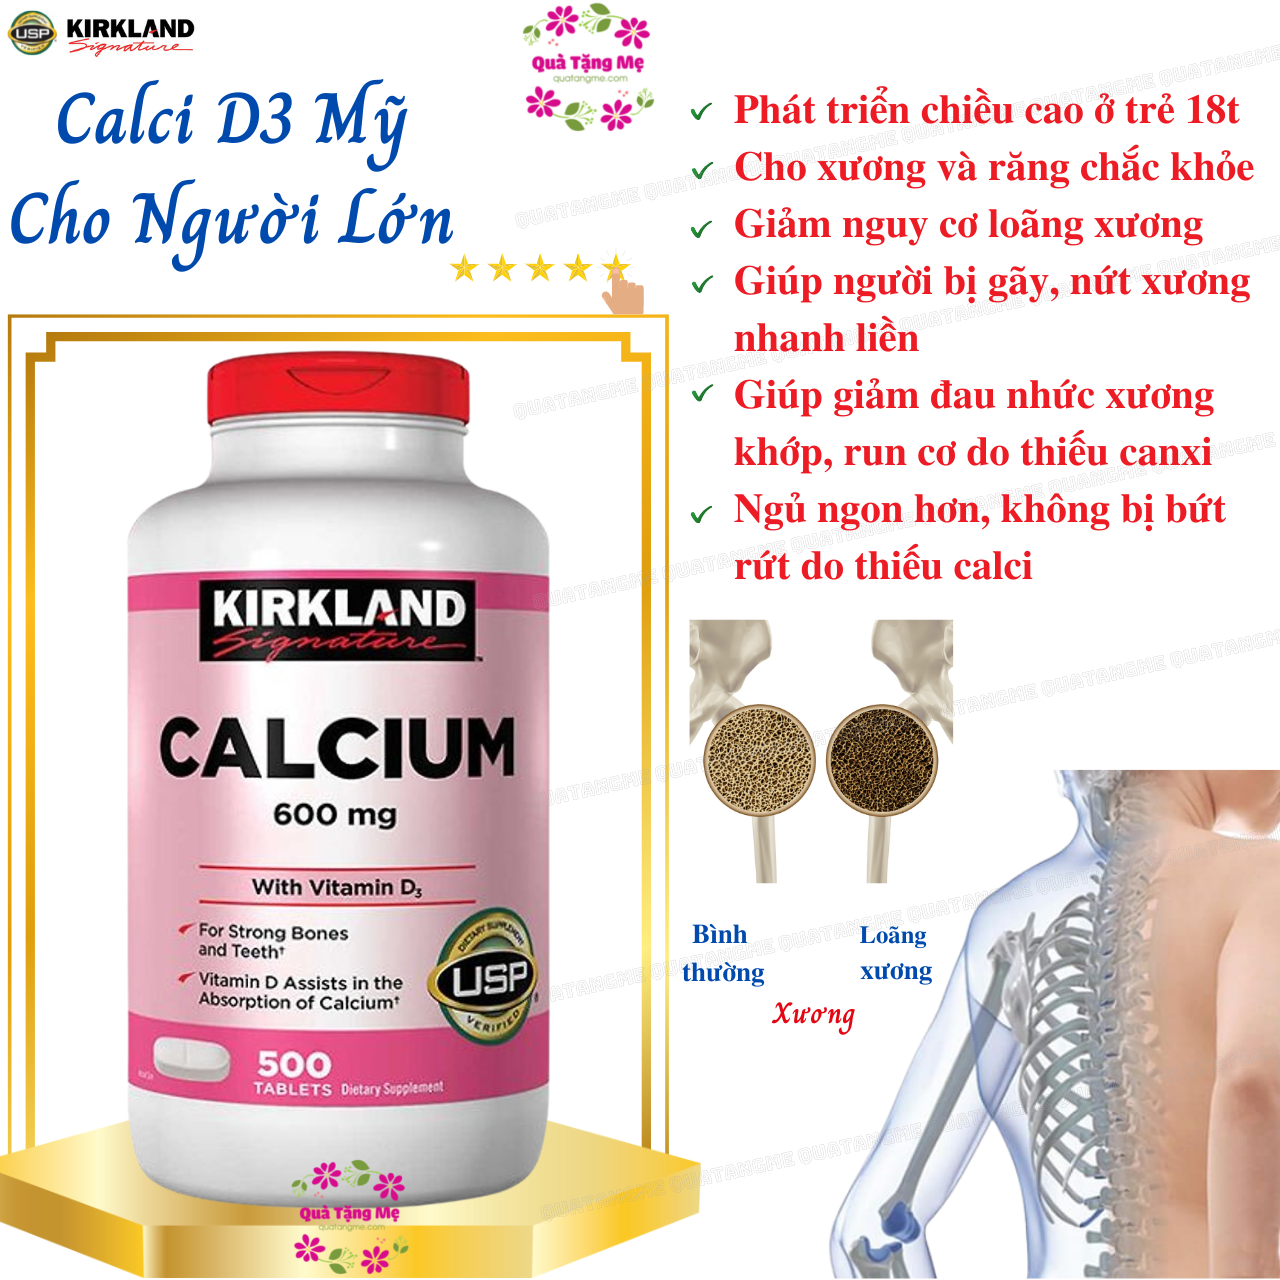 Calci D3 Mỹ Cho Người Lớn Kirkland Signature Calcium 600mg With Vitamin D3